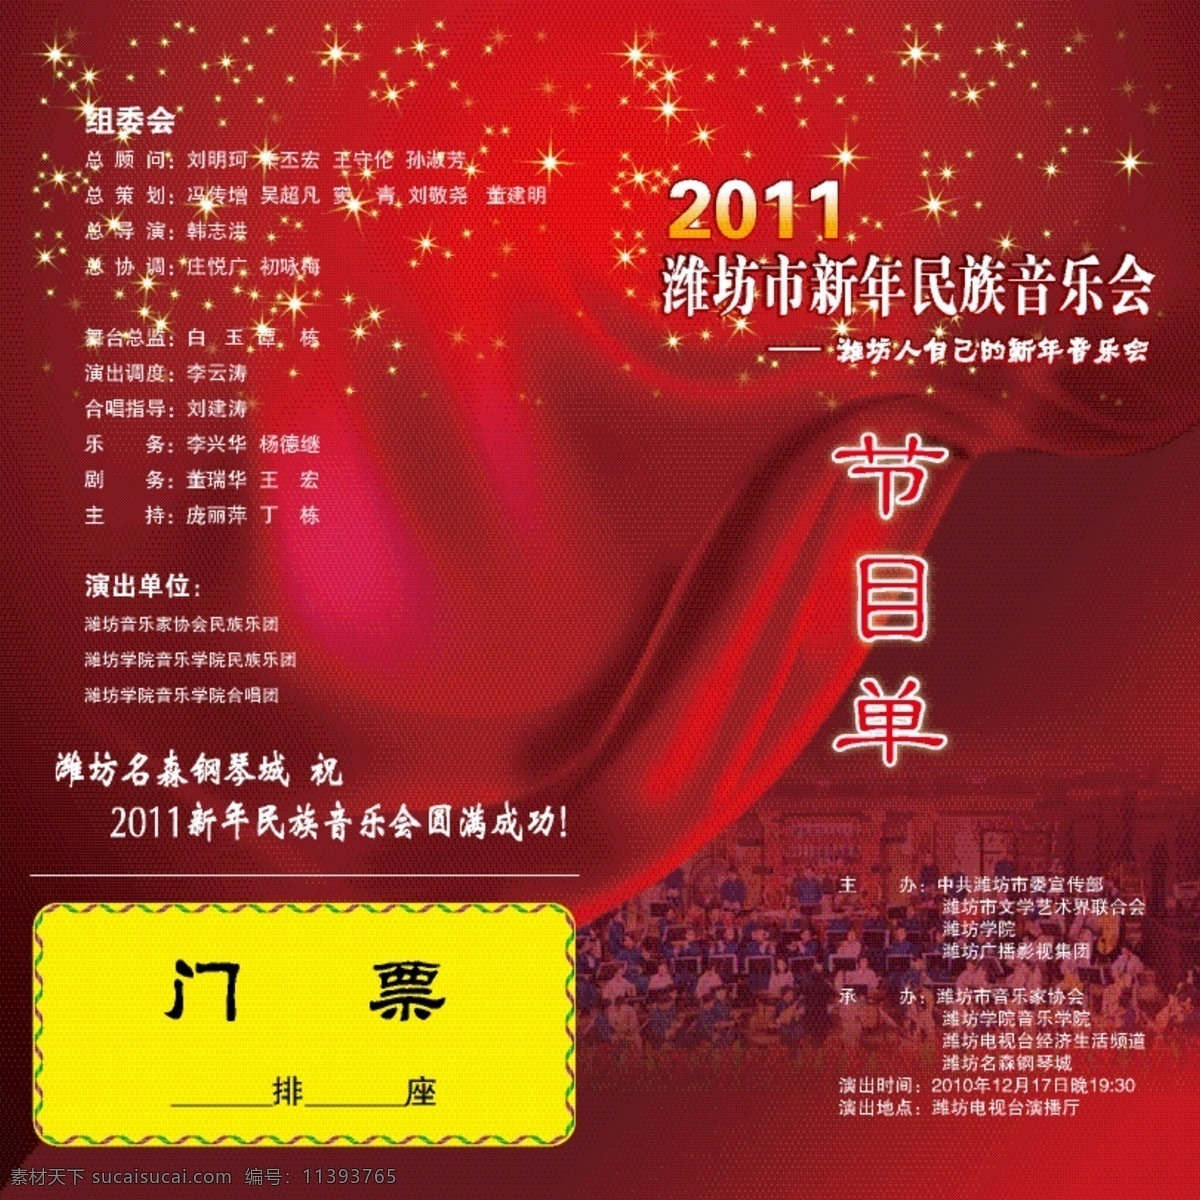 背景 红色 节目单 其他设计 音乐会 2011 新年 矢量 模板下载 海报 宣传海报 宣传单 彩页 dm